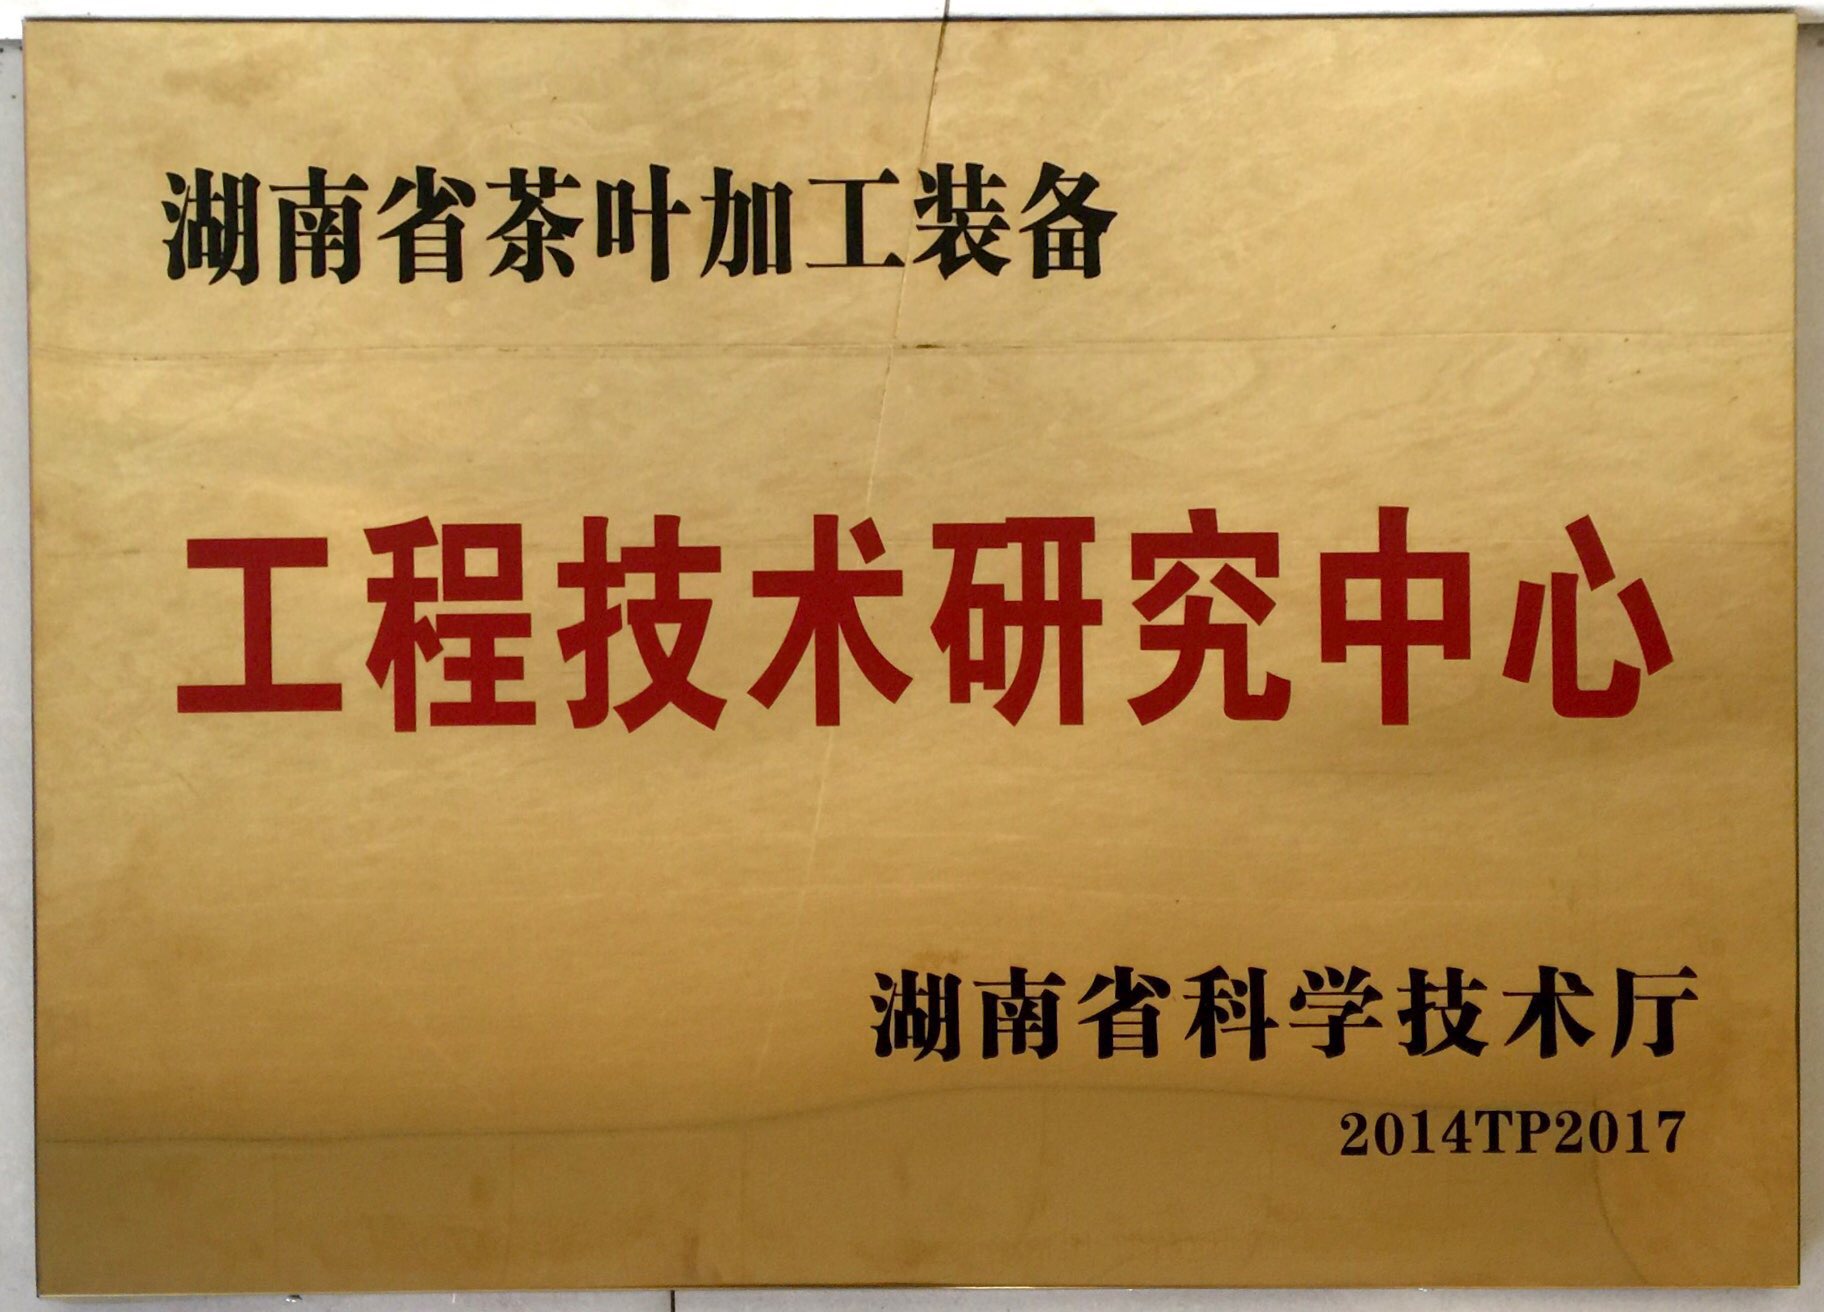 我公司被评为“湖南省茶叶加工装备工程技术研究中心”